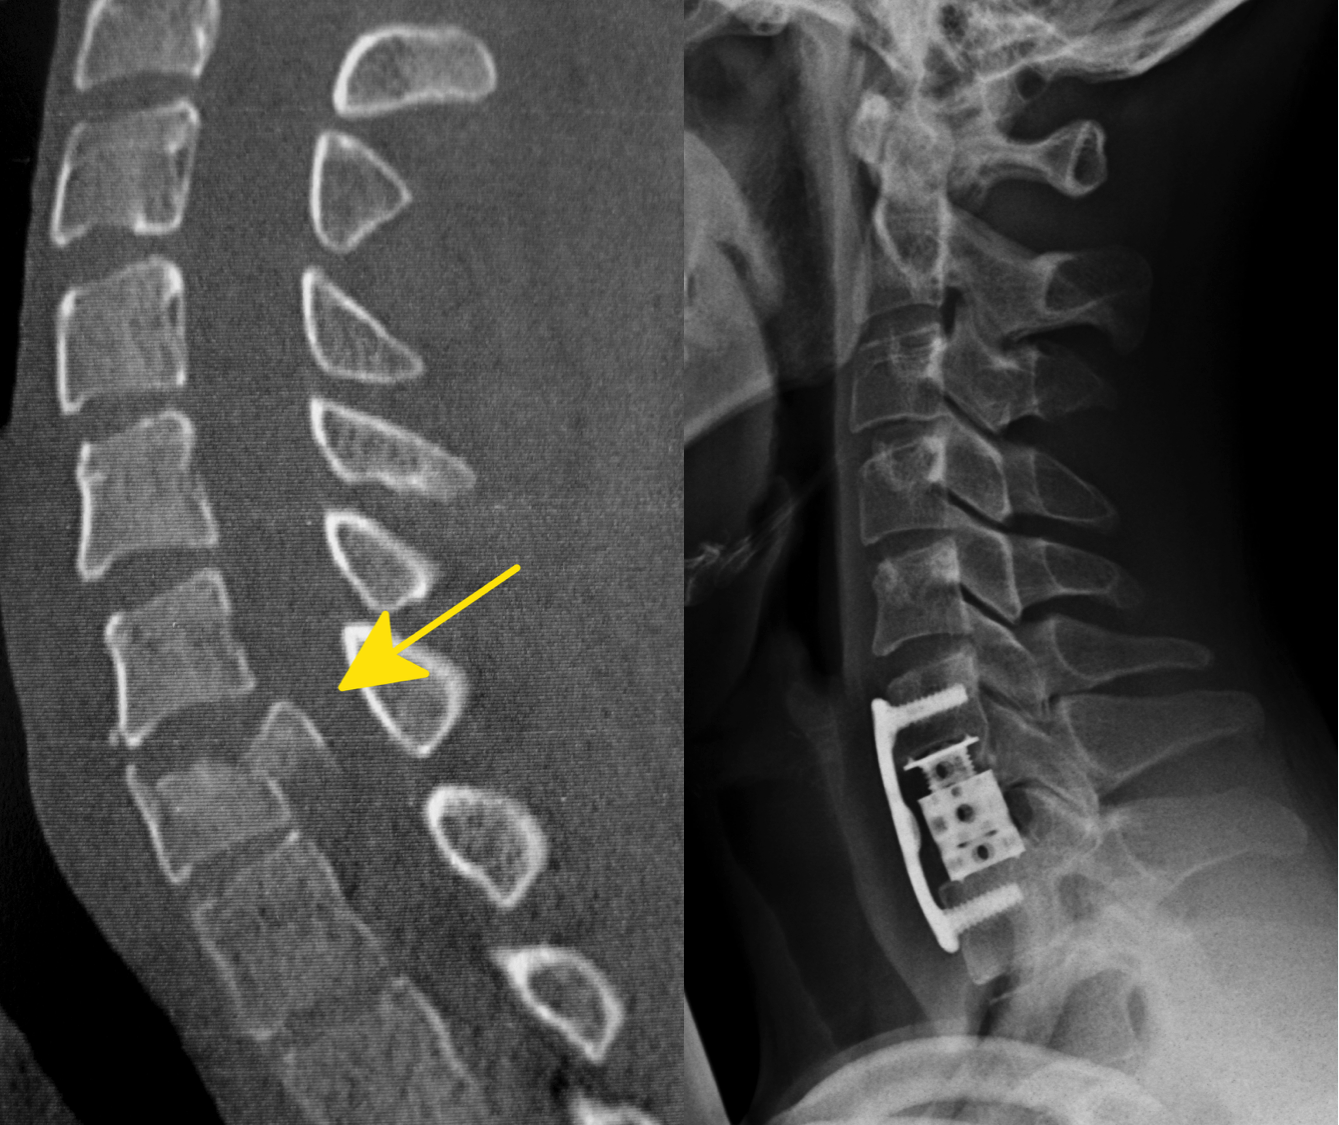 Eine Fraktur der Halswirbelsäule vor und nach der Operation. Hier musste der komplette Halswirbel entfernt werden und durch ein distrahierbares Körbchen ersetzt werden. Eine zusätzliche Stabilisierung erfolgte hier mit einer Platte.